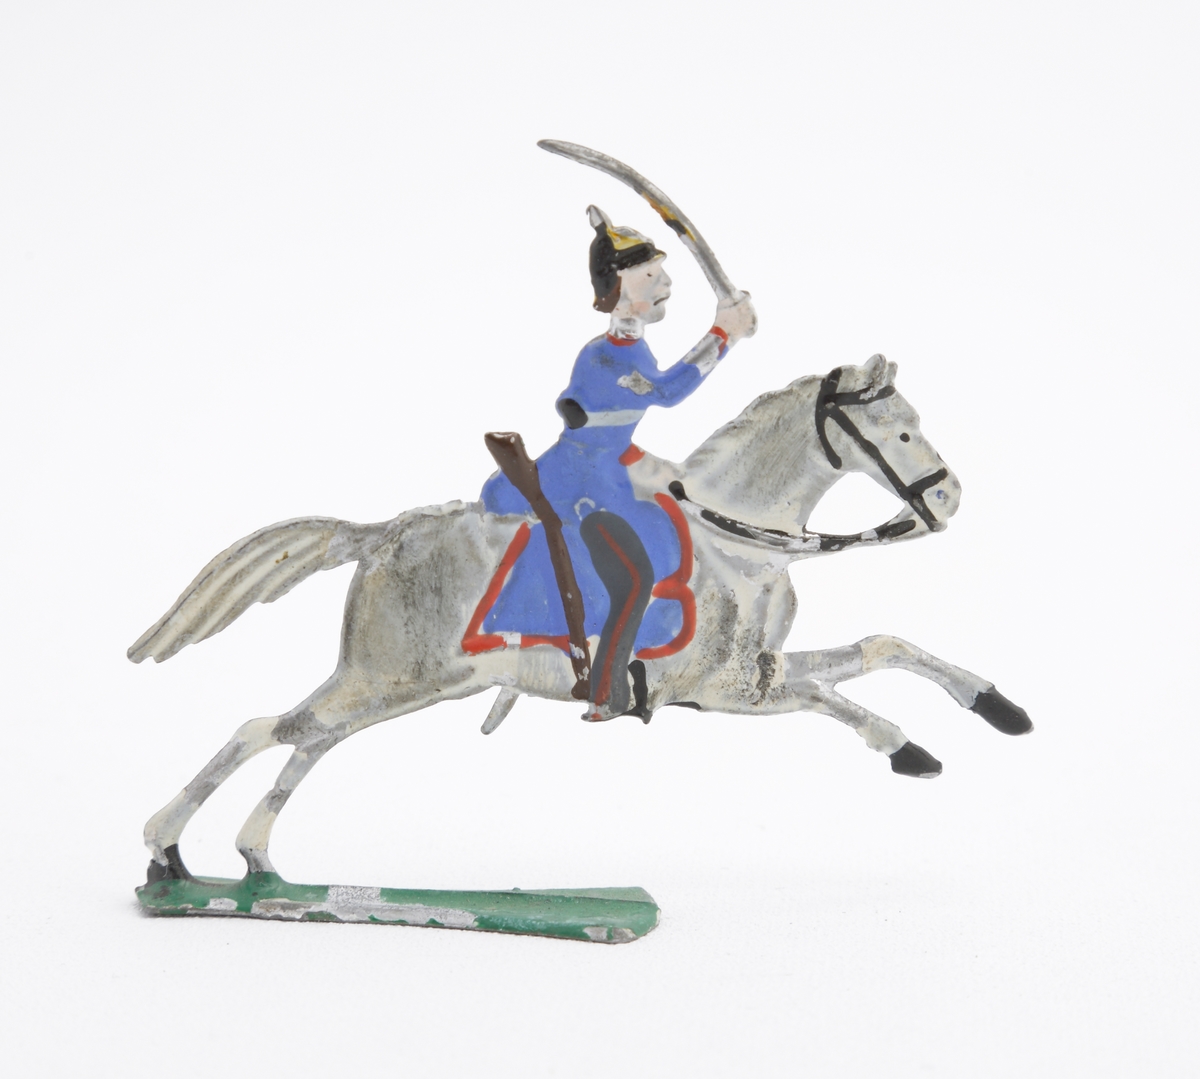 Ryttare till häst i blå uniform med dragen sabel. Han är även utrustad med koppel och pickelhuva. Sadeln är blå med röda kanter. Hästen vit på grön platta.
Inskrivet i huvudkatalog 1963.